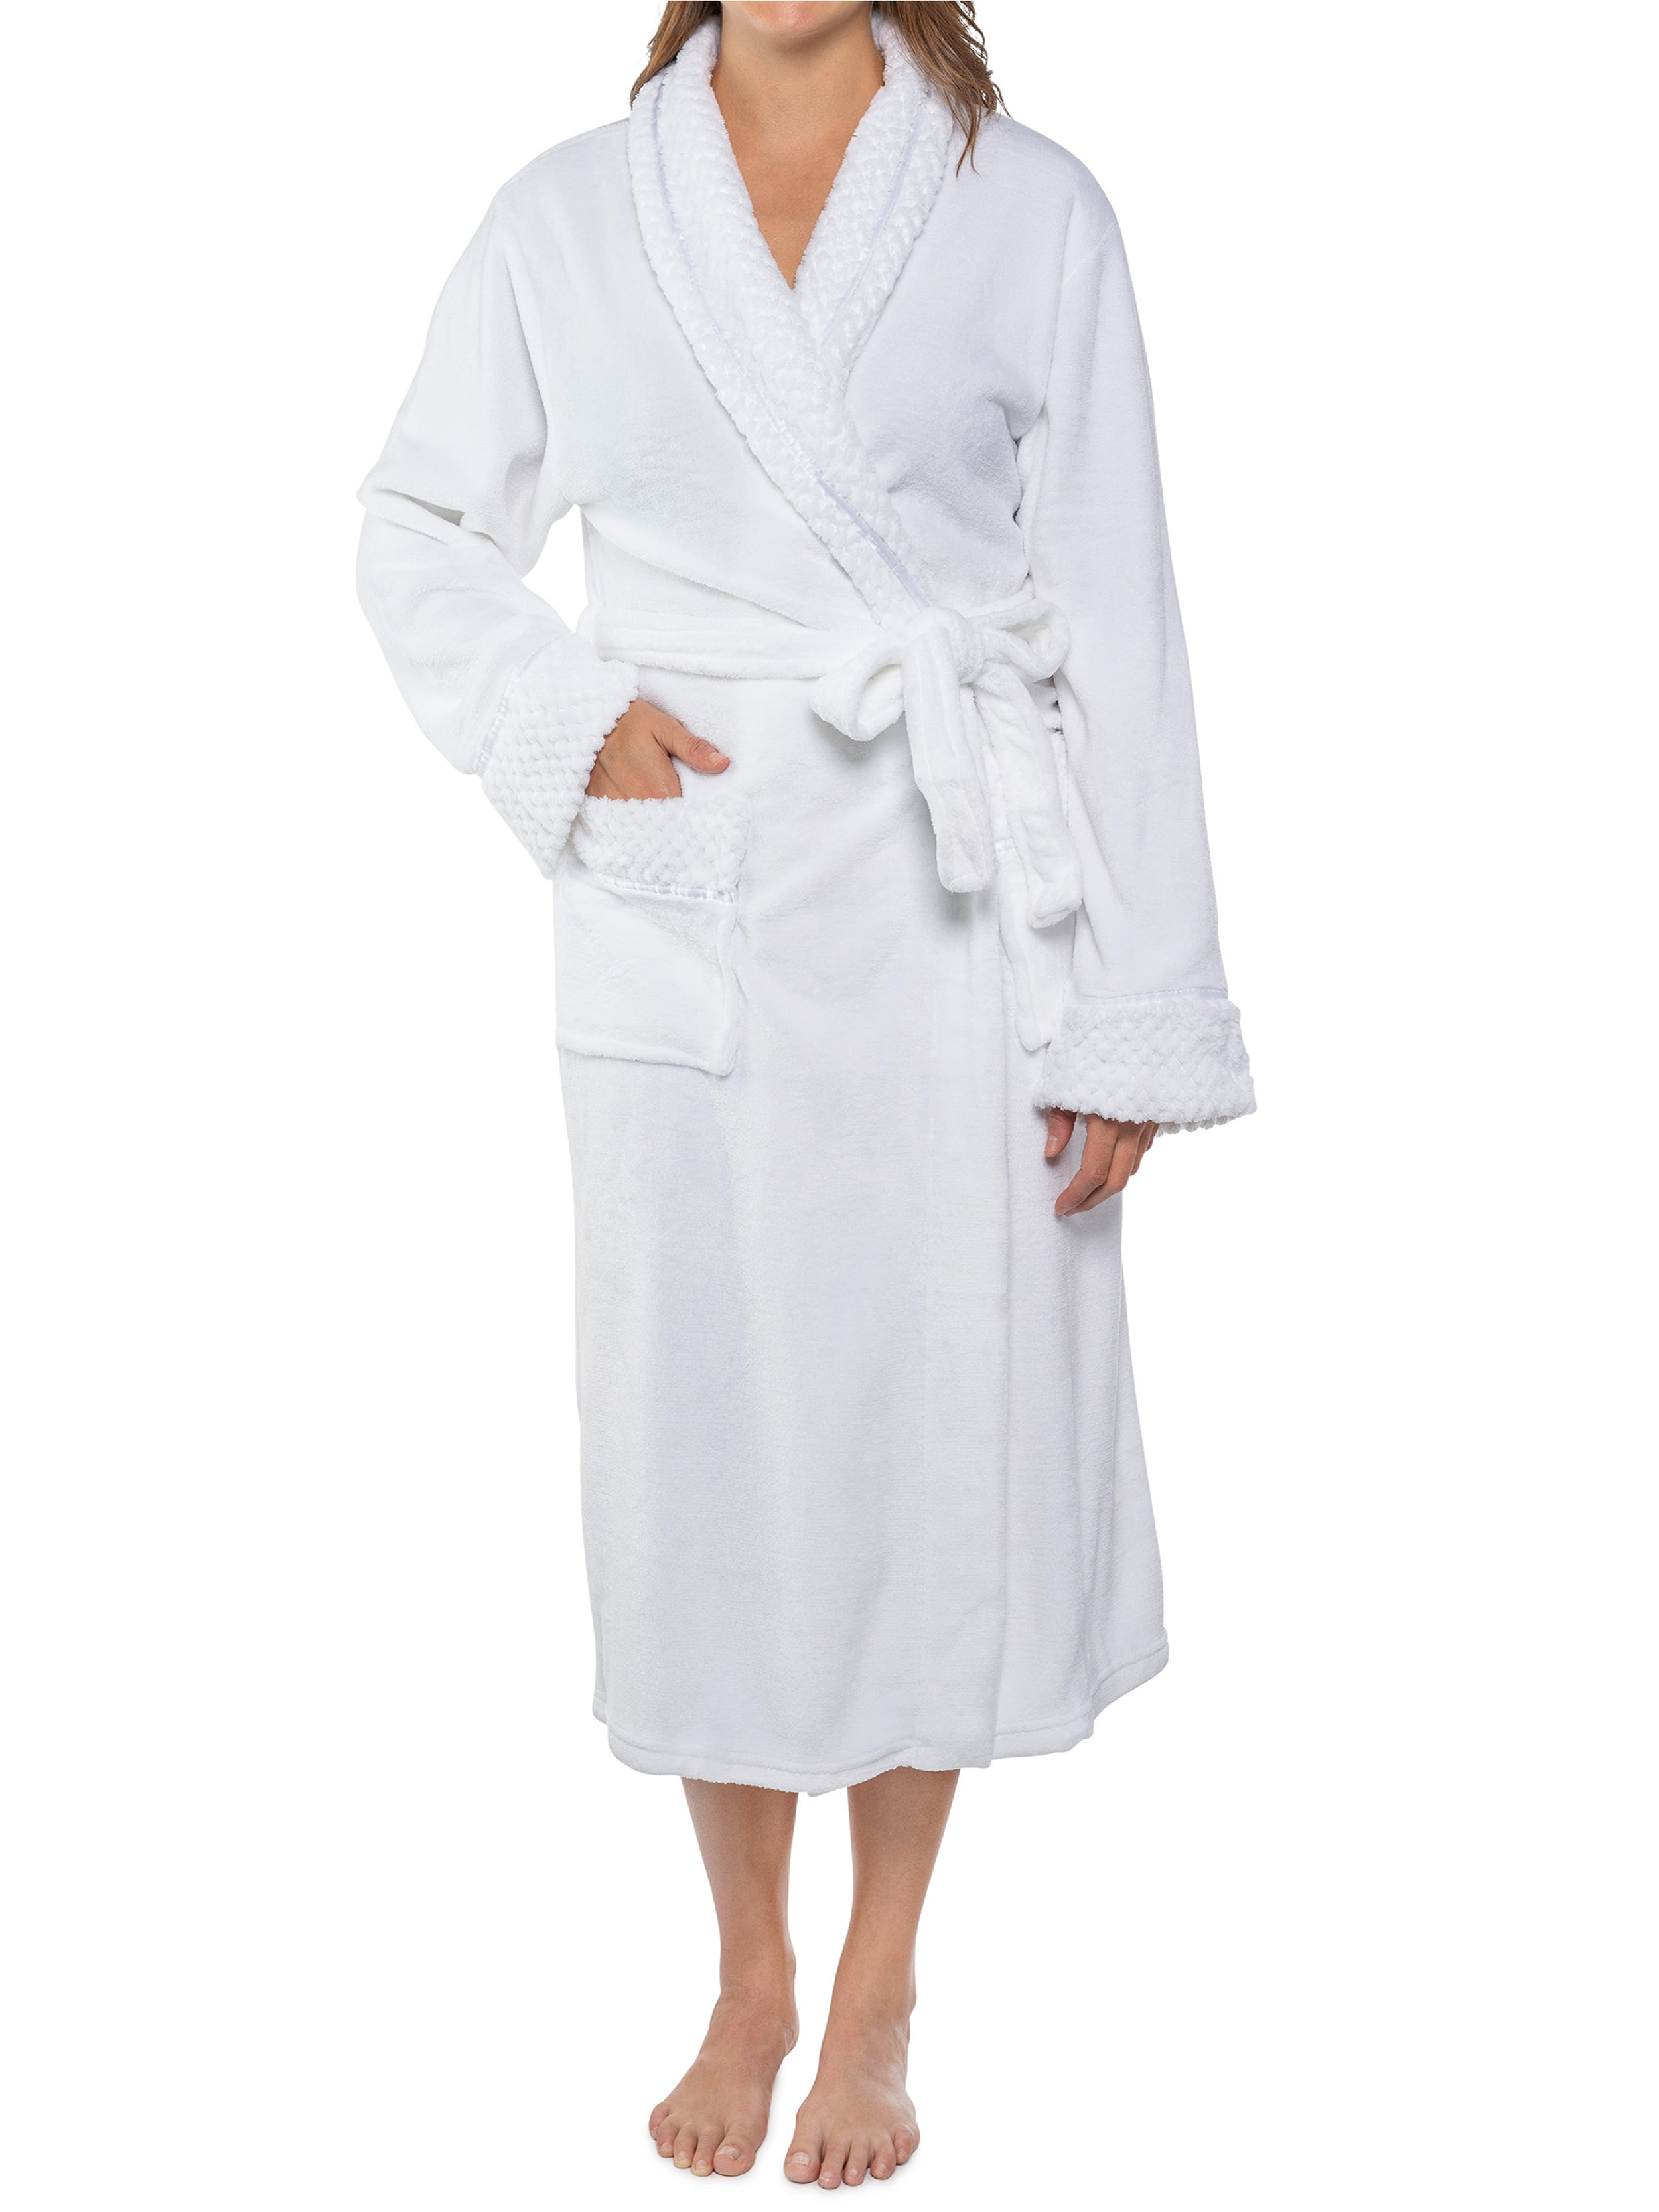 Pavilia - Deluxe Women Fleece Robe with Satin Trim | Luxurious Plush ...